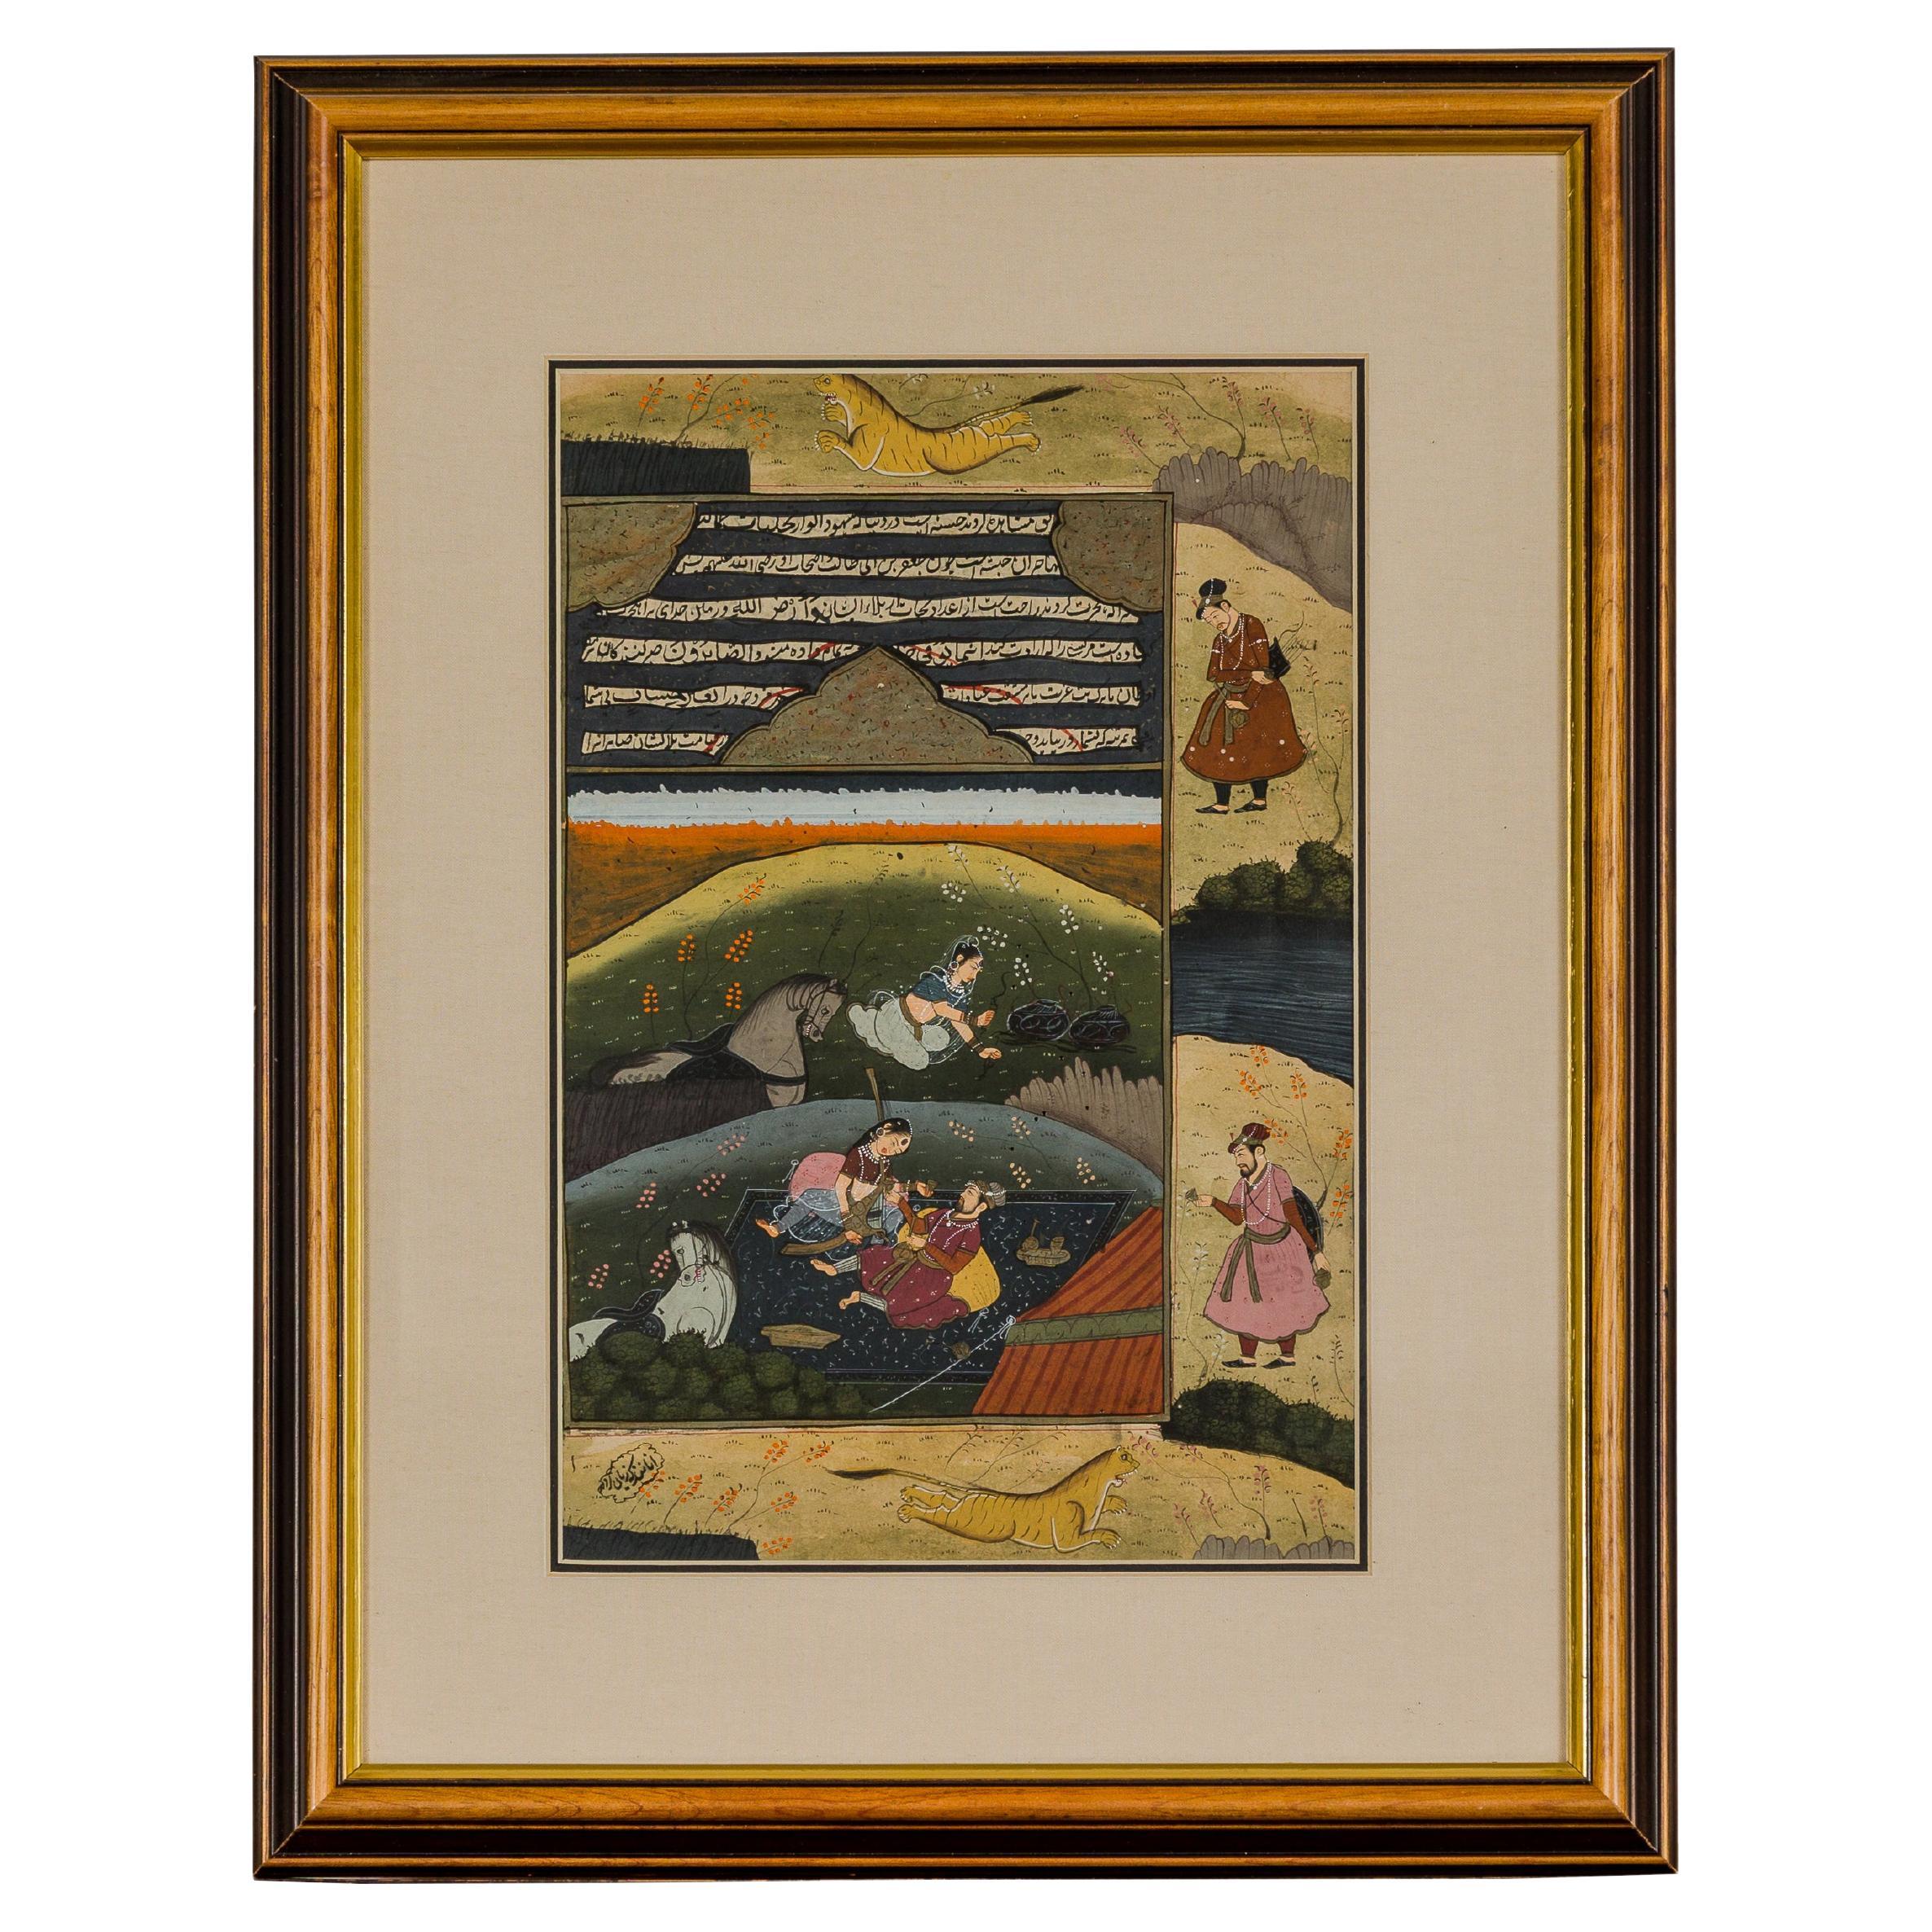 Aquarellgemälde im Mughal-Stil auf Papier mit der Darstellung einer königlichen Hofszene, gerahmt